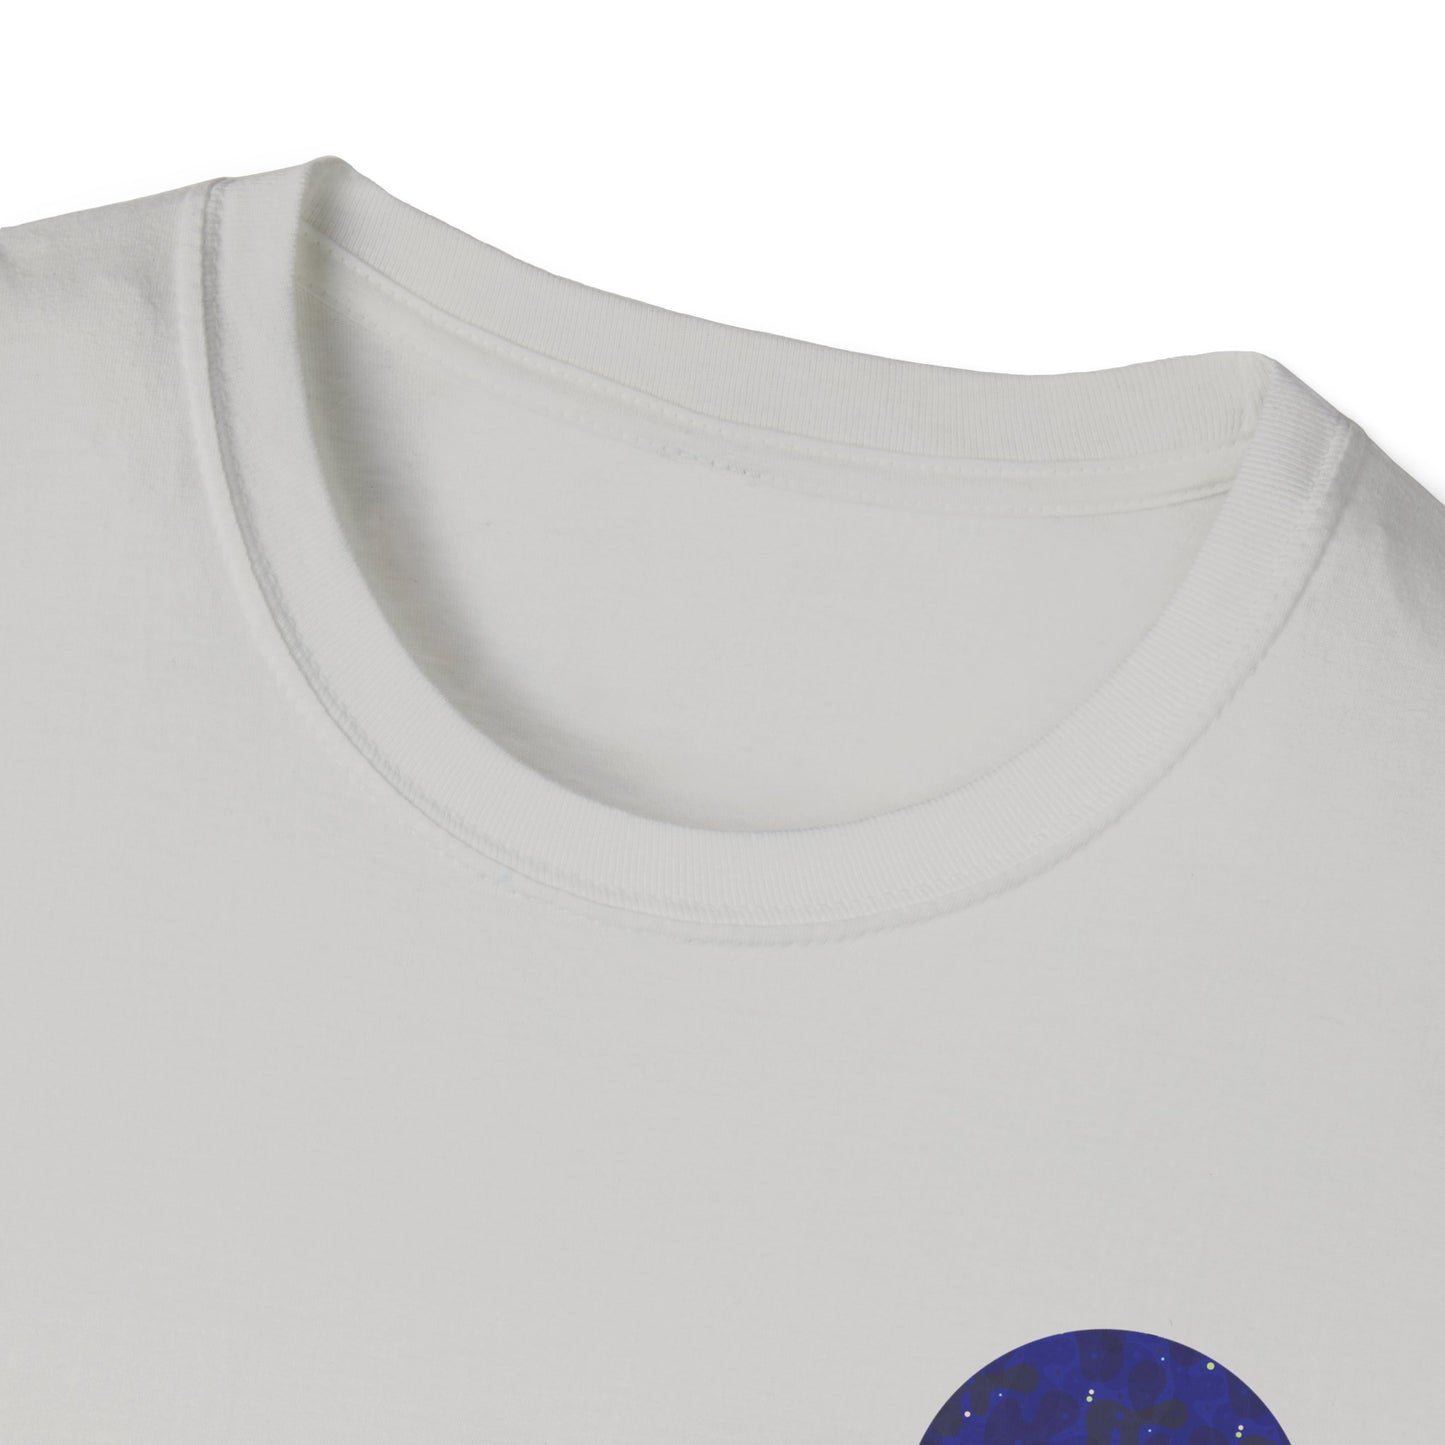 Intergalactic Tee Shirt 👽